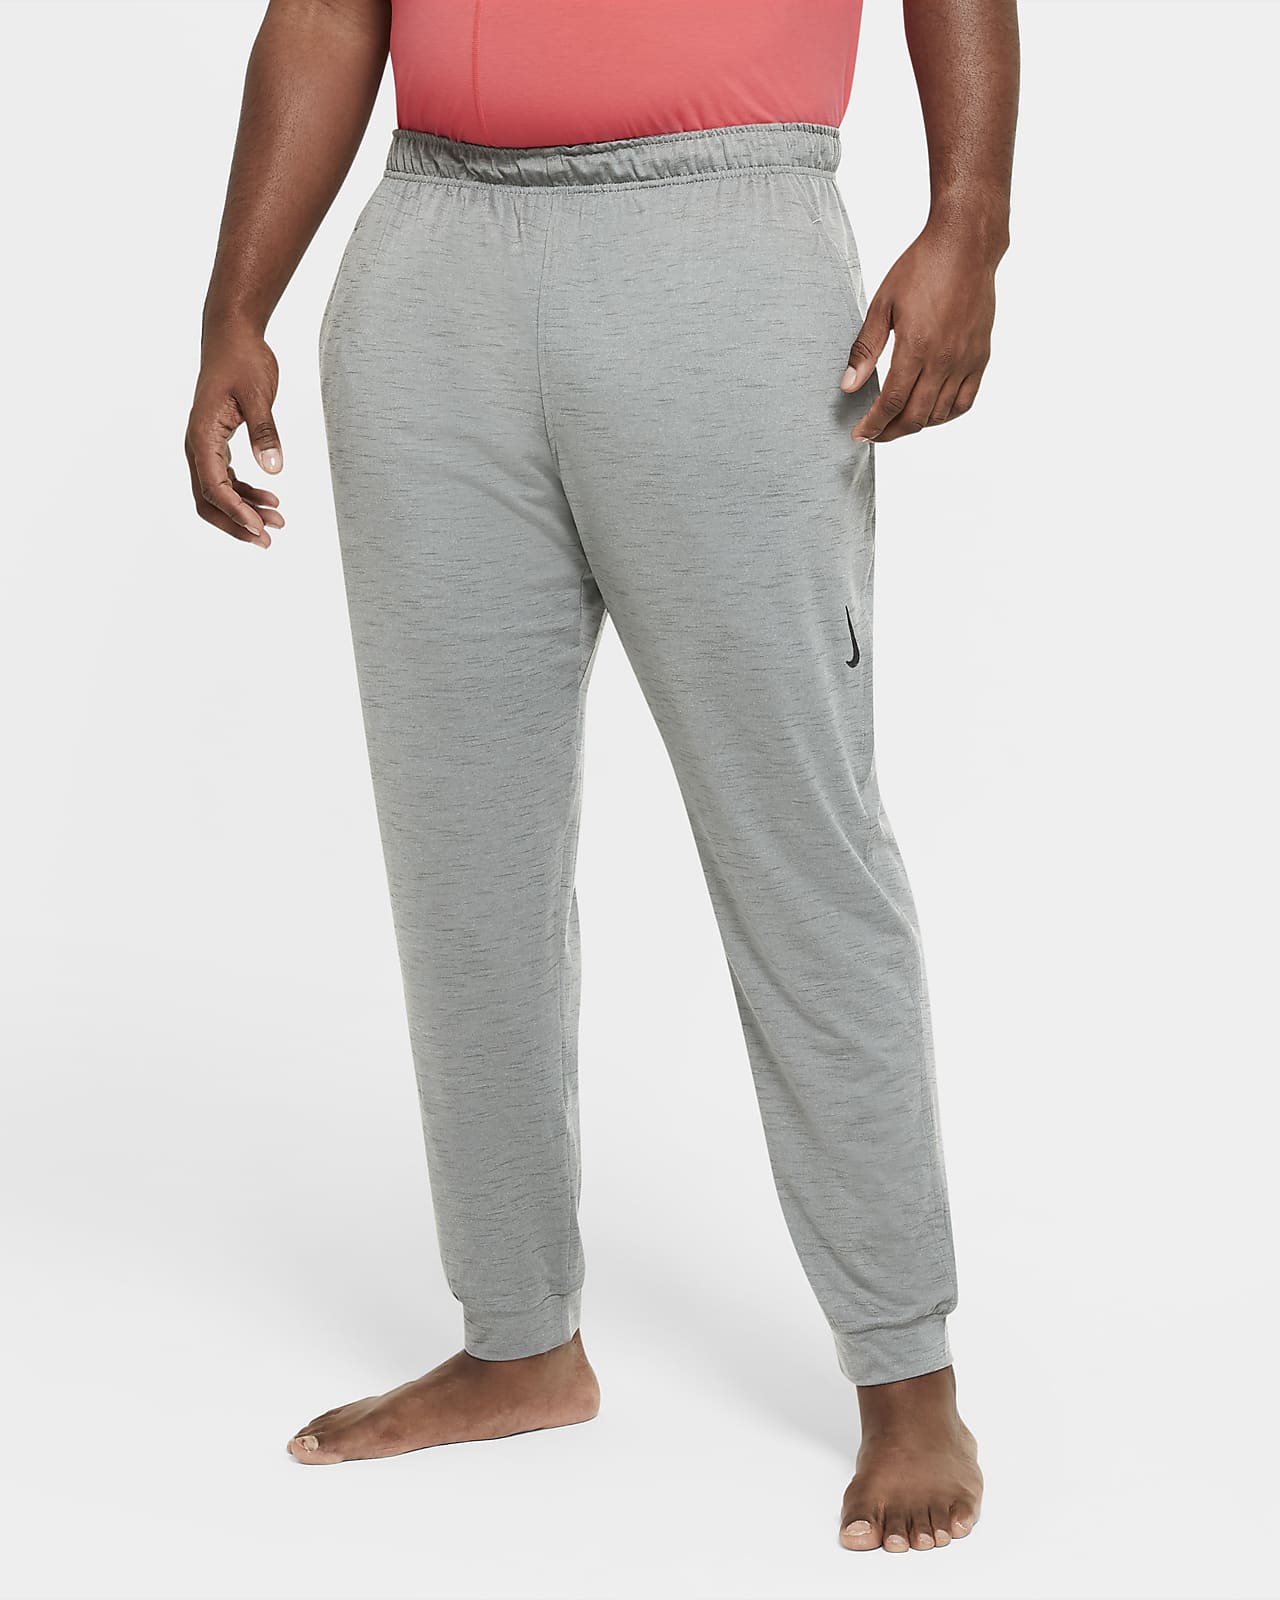 Nike Yoga Dri-Fit Training Jogger Pants CZ2223-492-Size Large